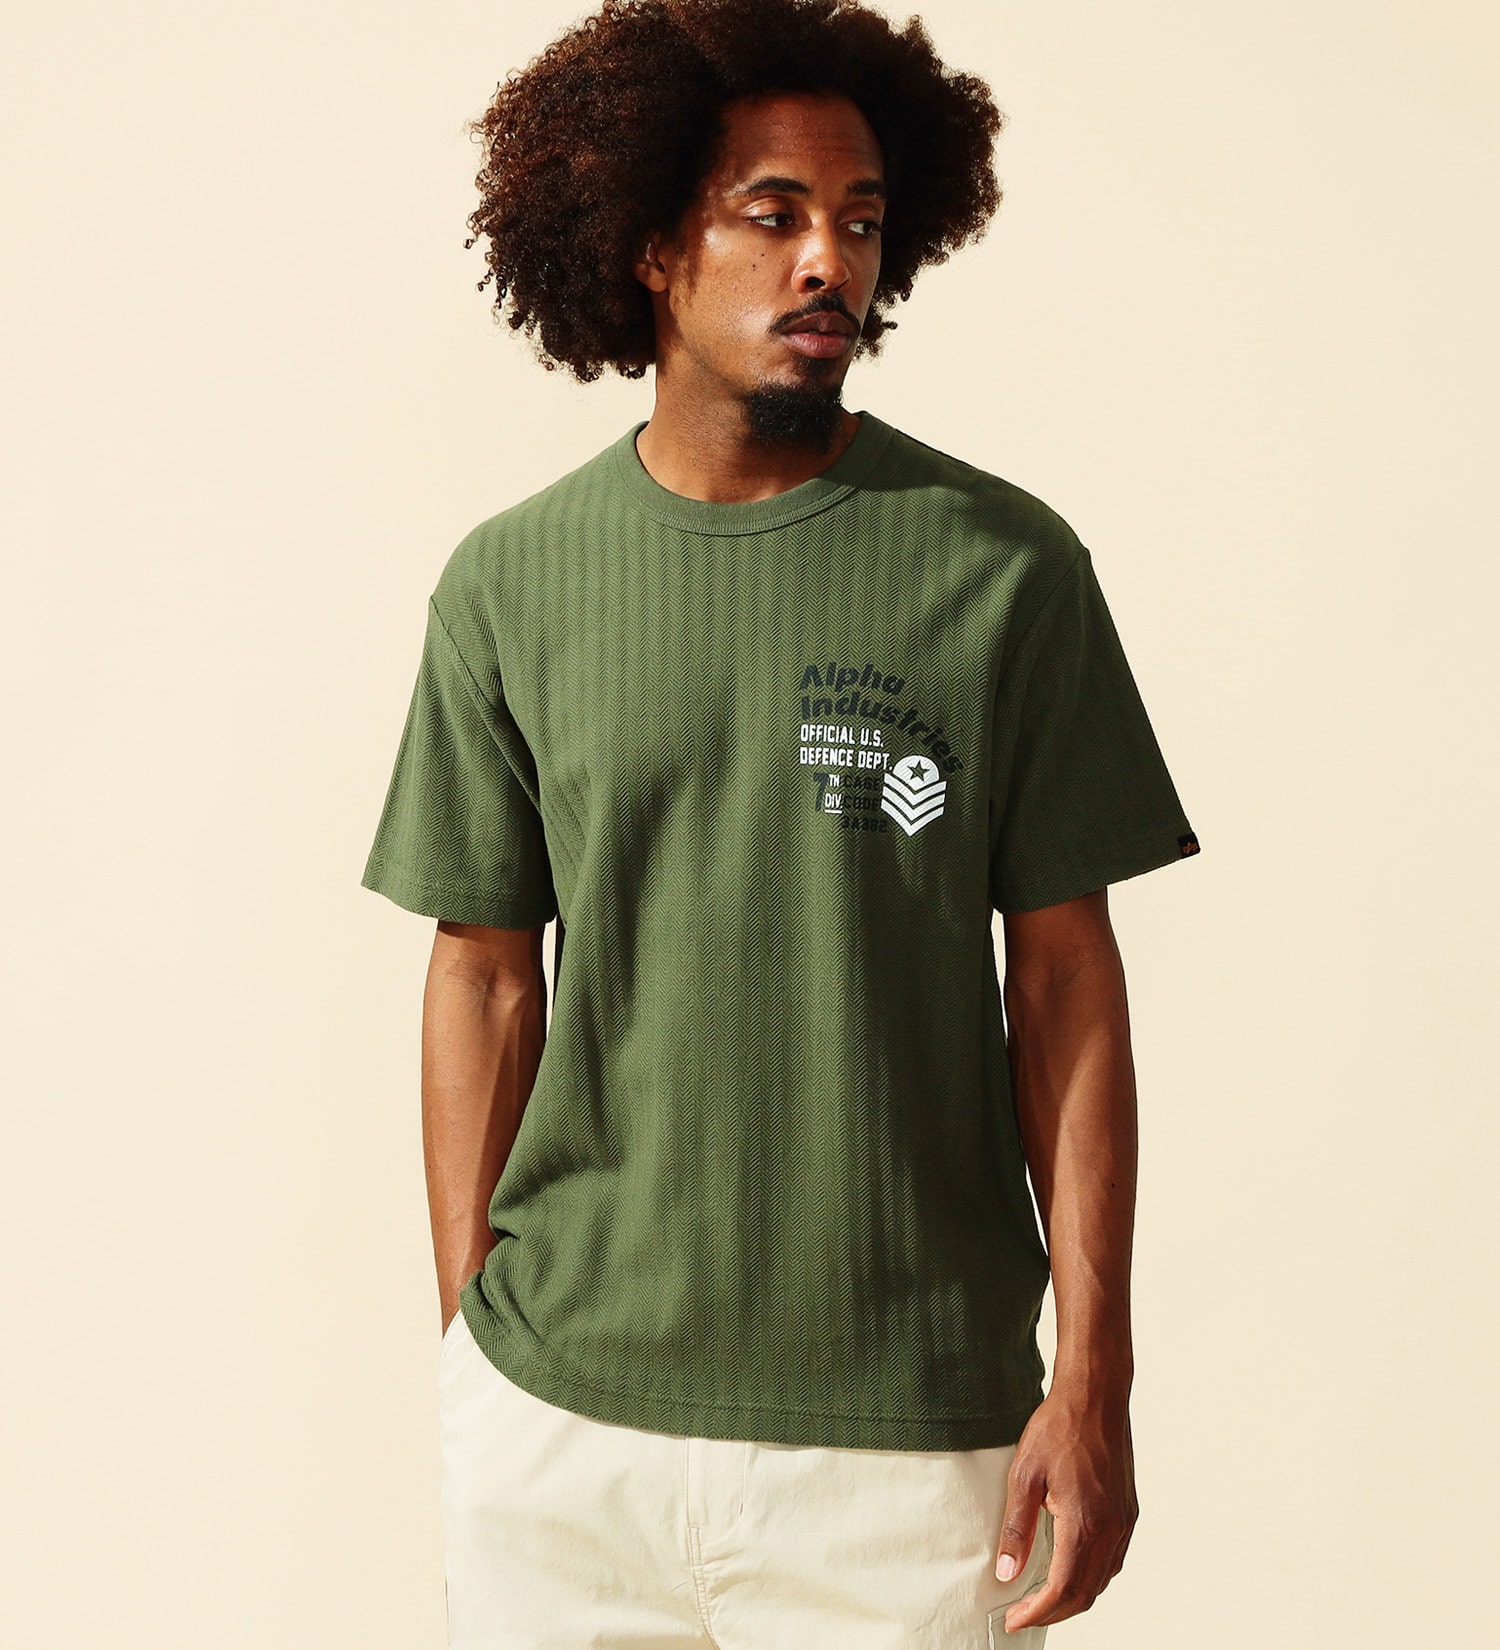 ALPHA(アルファ)のヘリンボーン バックプリントTシャツ 半袖|トップス/Tシャツ/カットソー/メンズ|アーミー